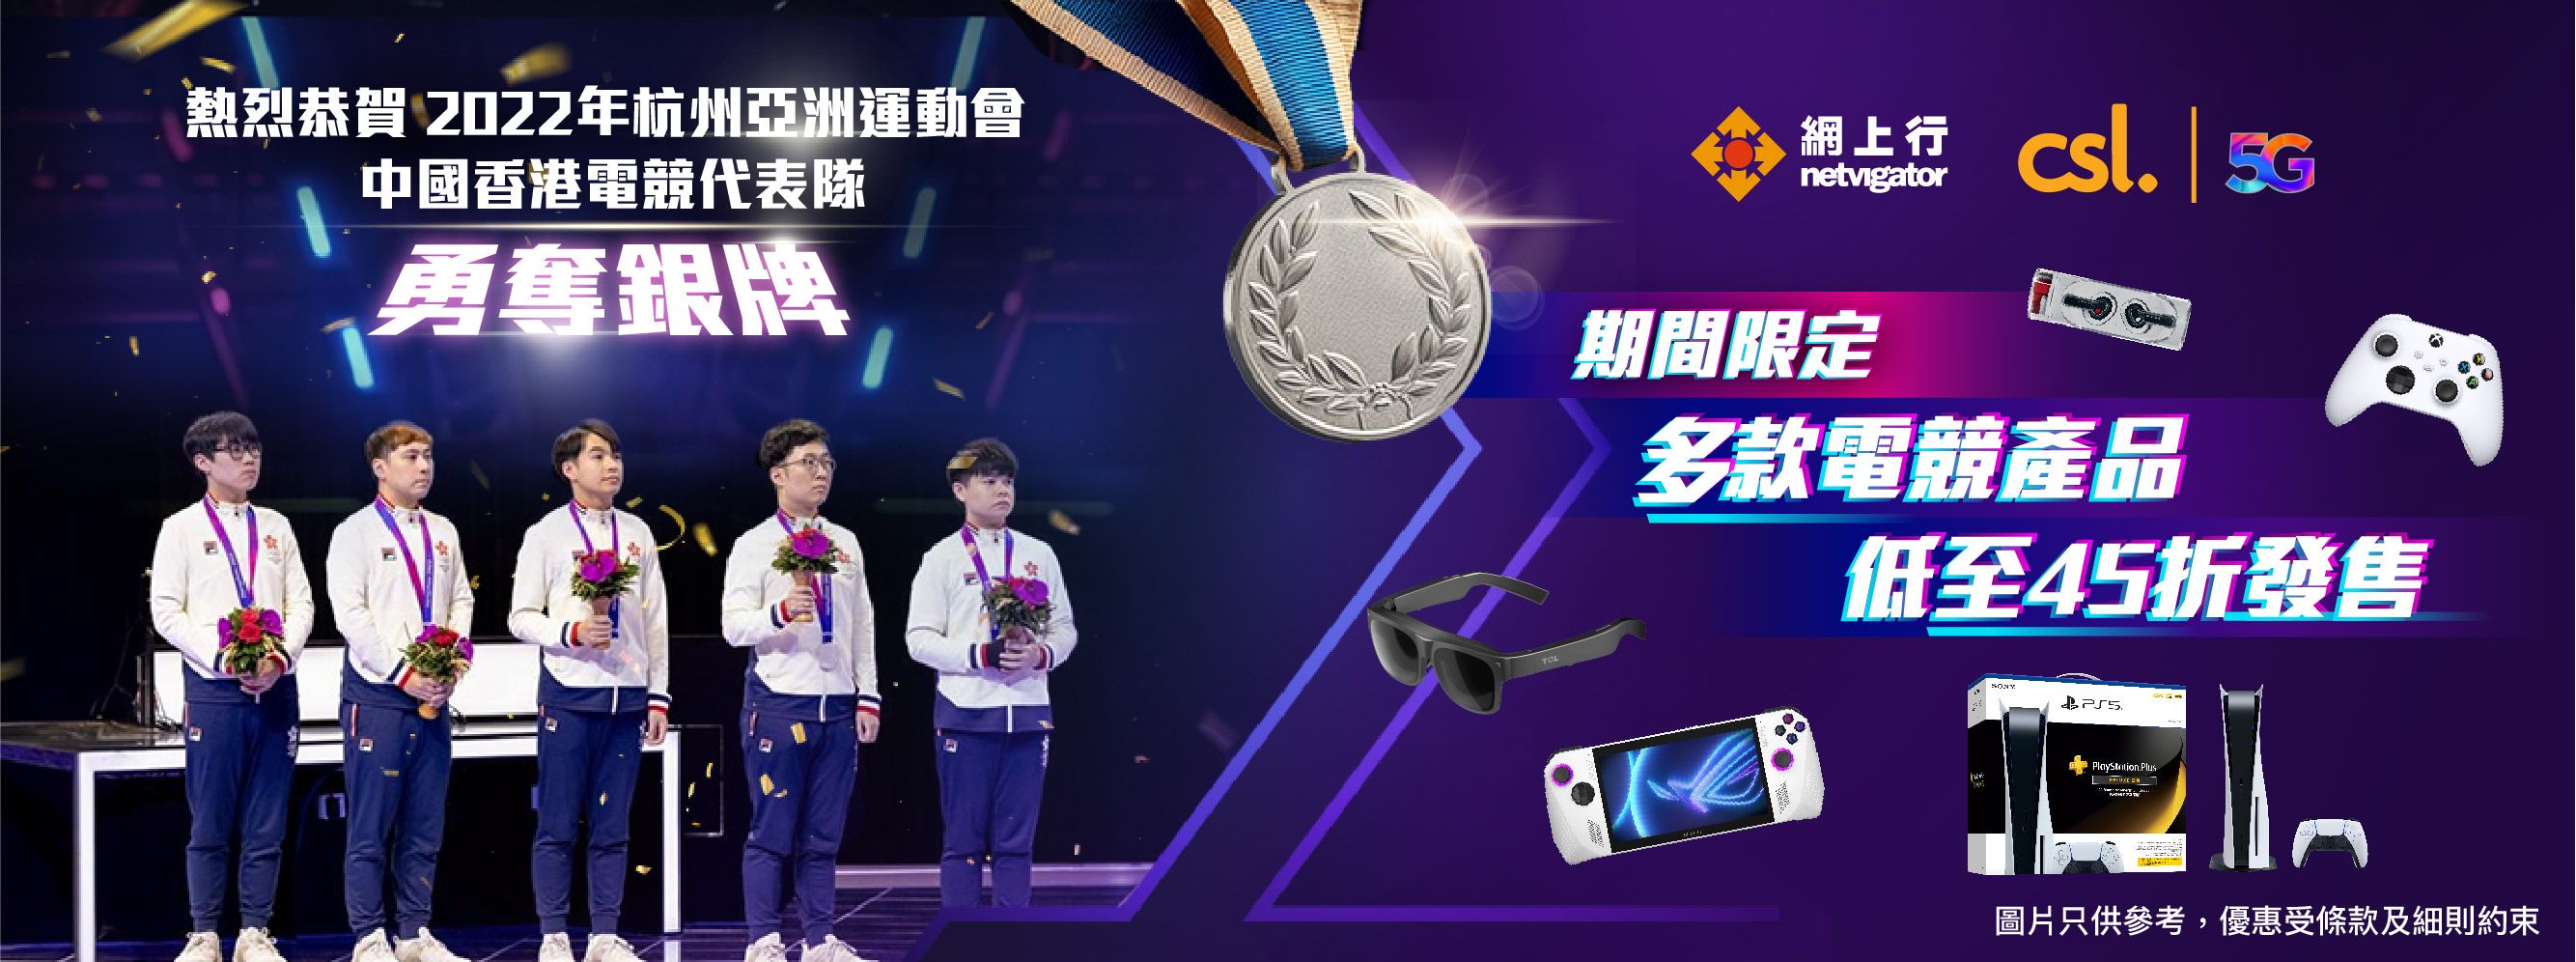 網上行熱烈恭賀2022年杭州亞洲運動會中國香港電競代表隊勇奪銀牌